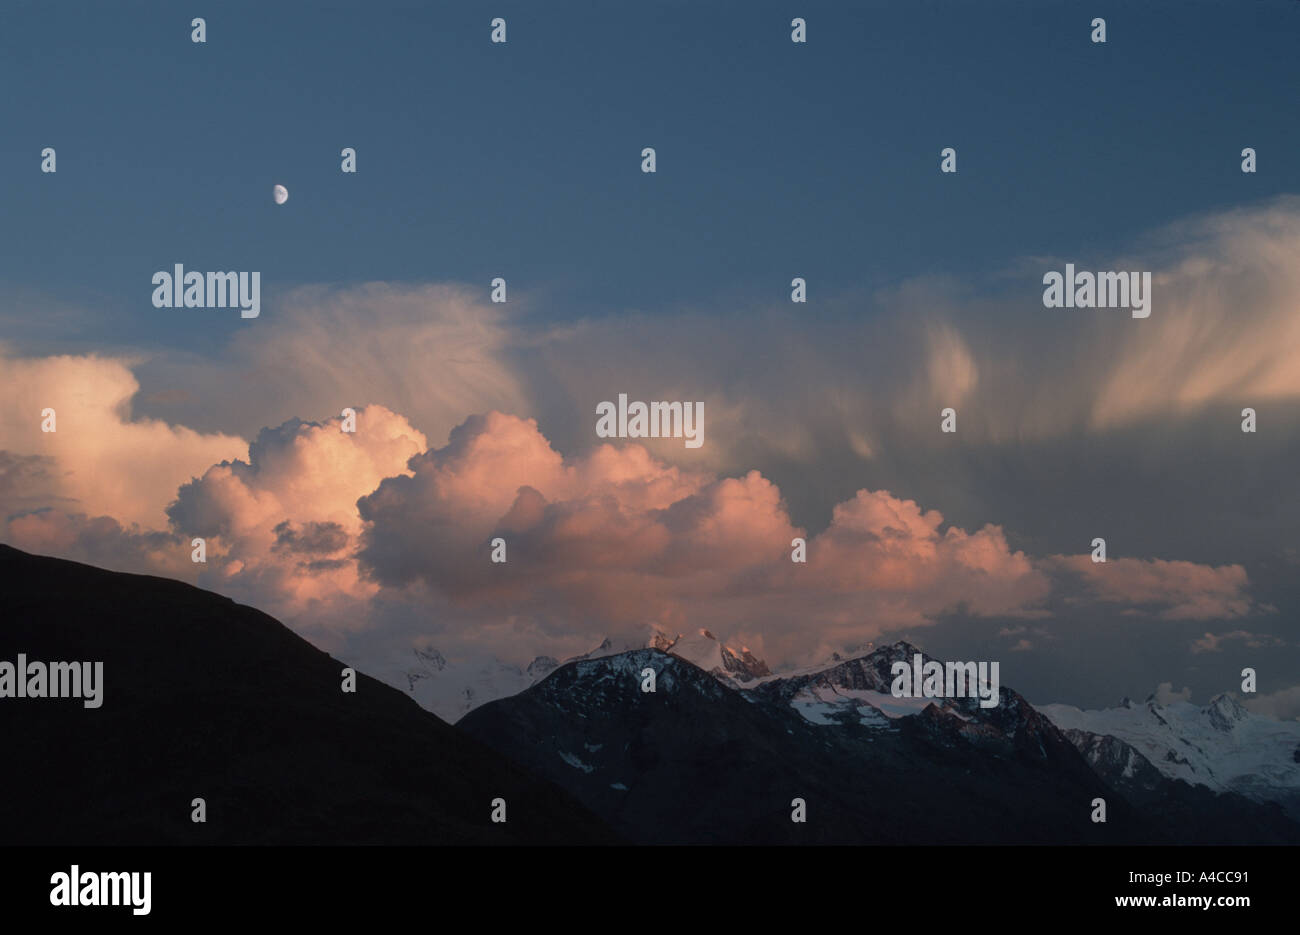 Luna crescente sopra le nuvole e le montagne illuminate dal sole di setting da Muottas Muragl, San Moritz Oberengadin in Svizzera Foto Stock